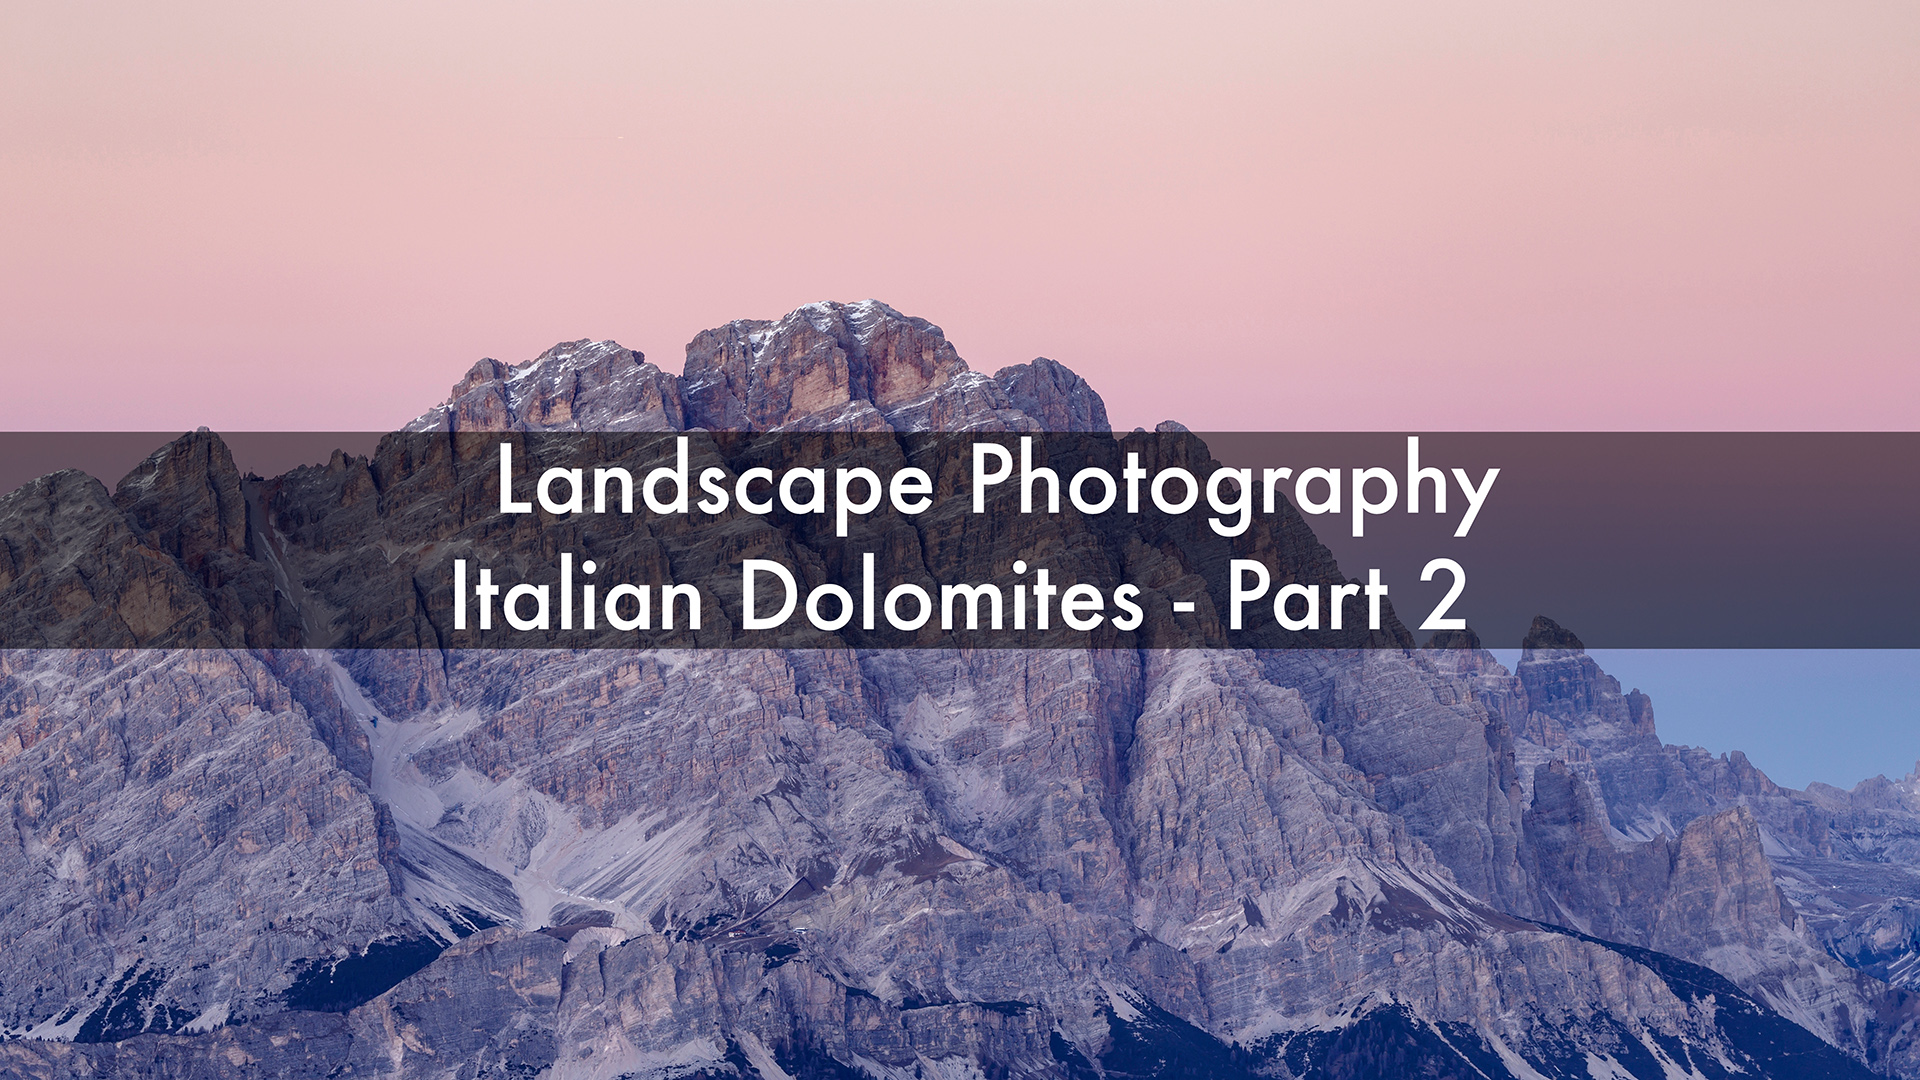 Italian Dolomites. Landscape Photography.